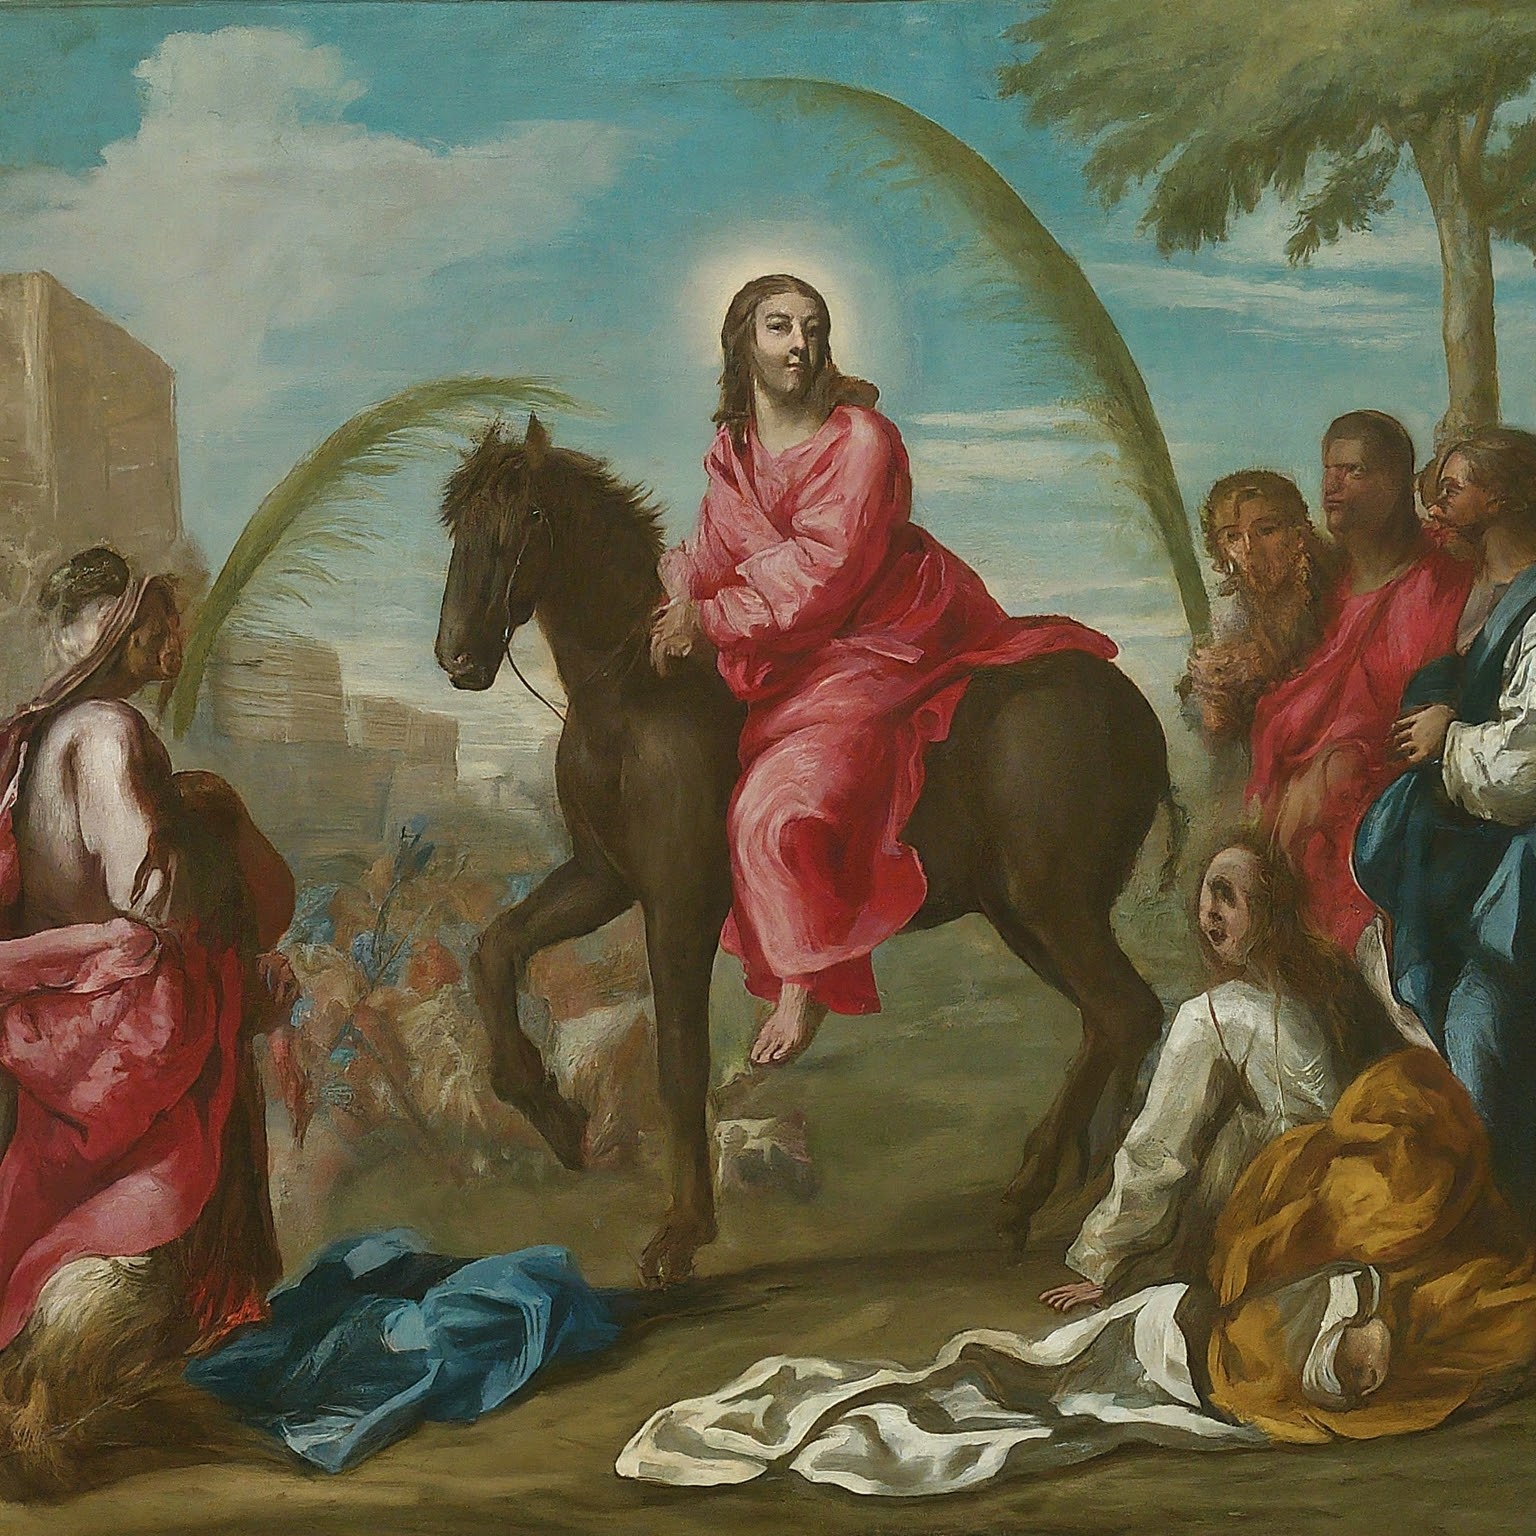 Christ riding a donkey into Jerusalem